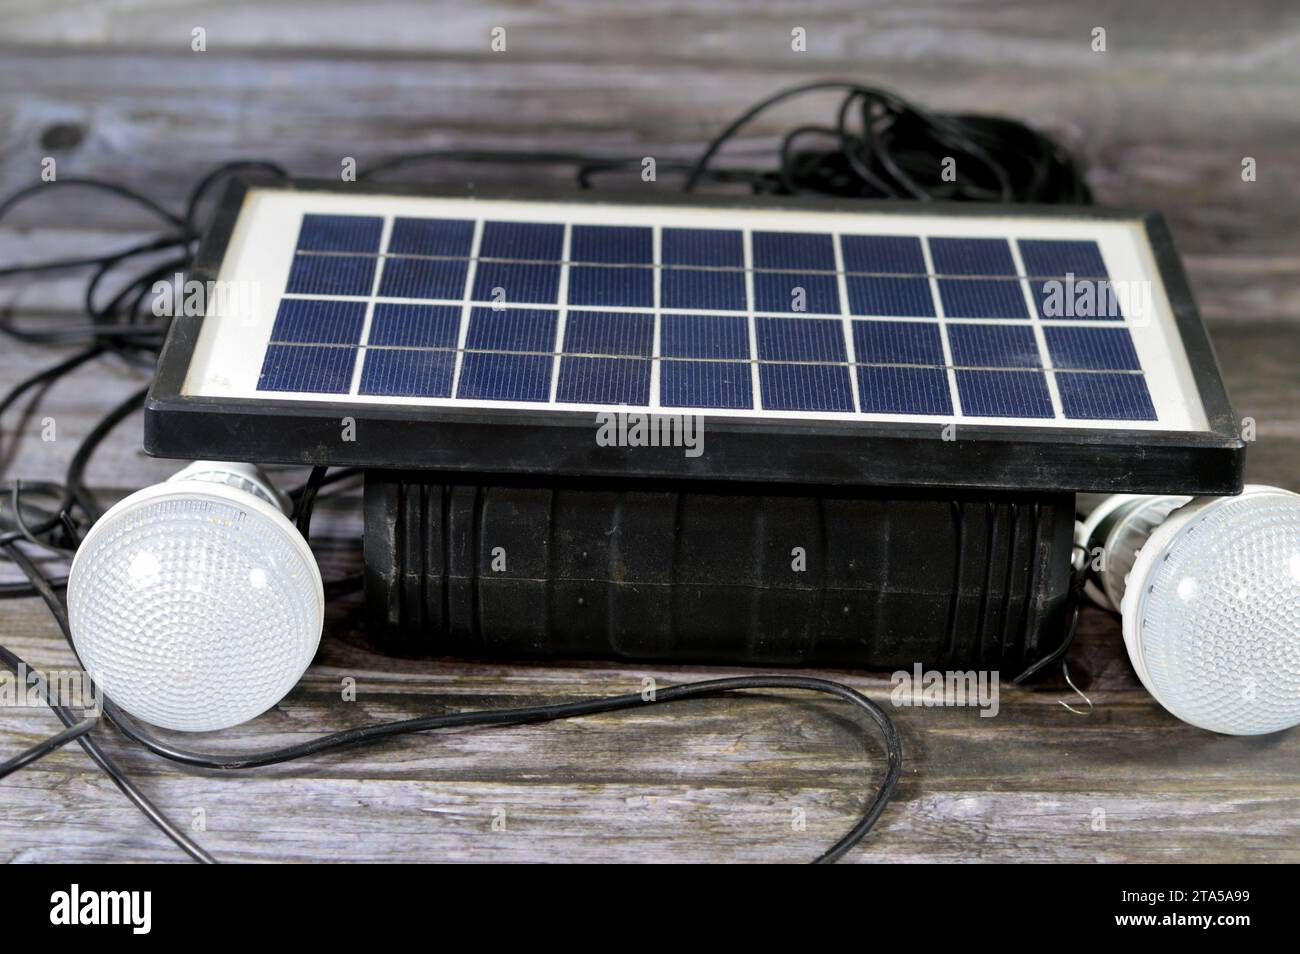 Una batteria multiuso caricata con un pannello solare, un dispositivo che converte la luce solare in elettricità utilizzando celle fotovoltaiche (PV) costituite da ma Foto Stock